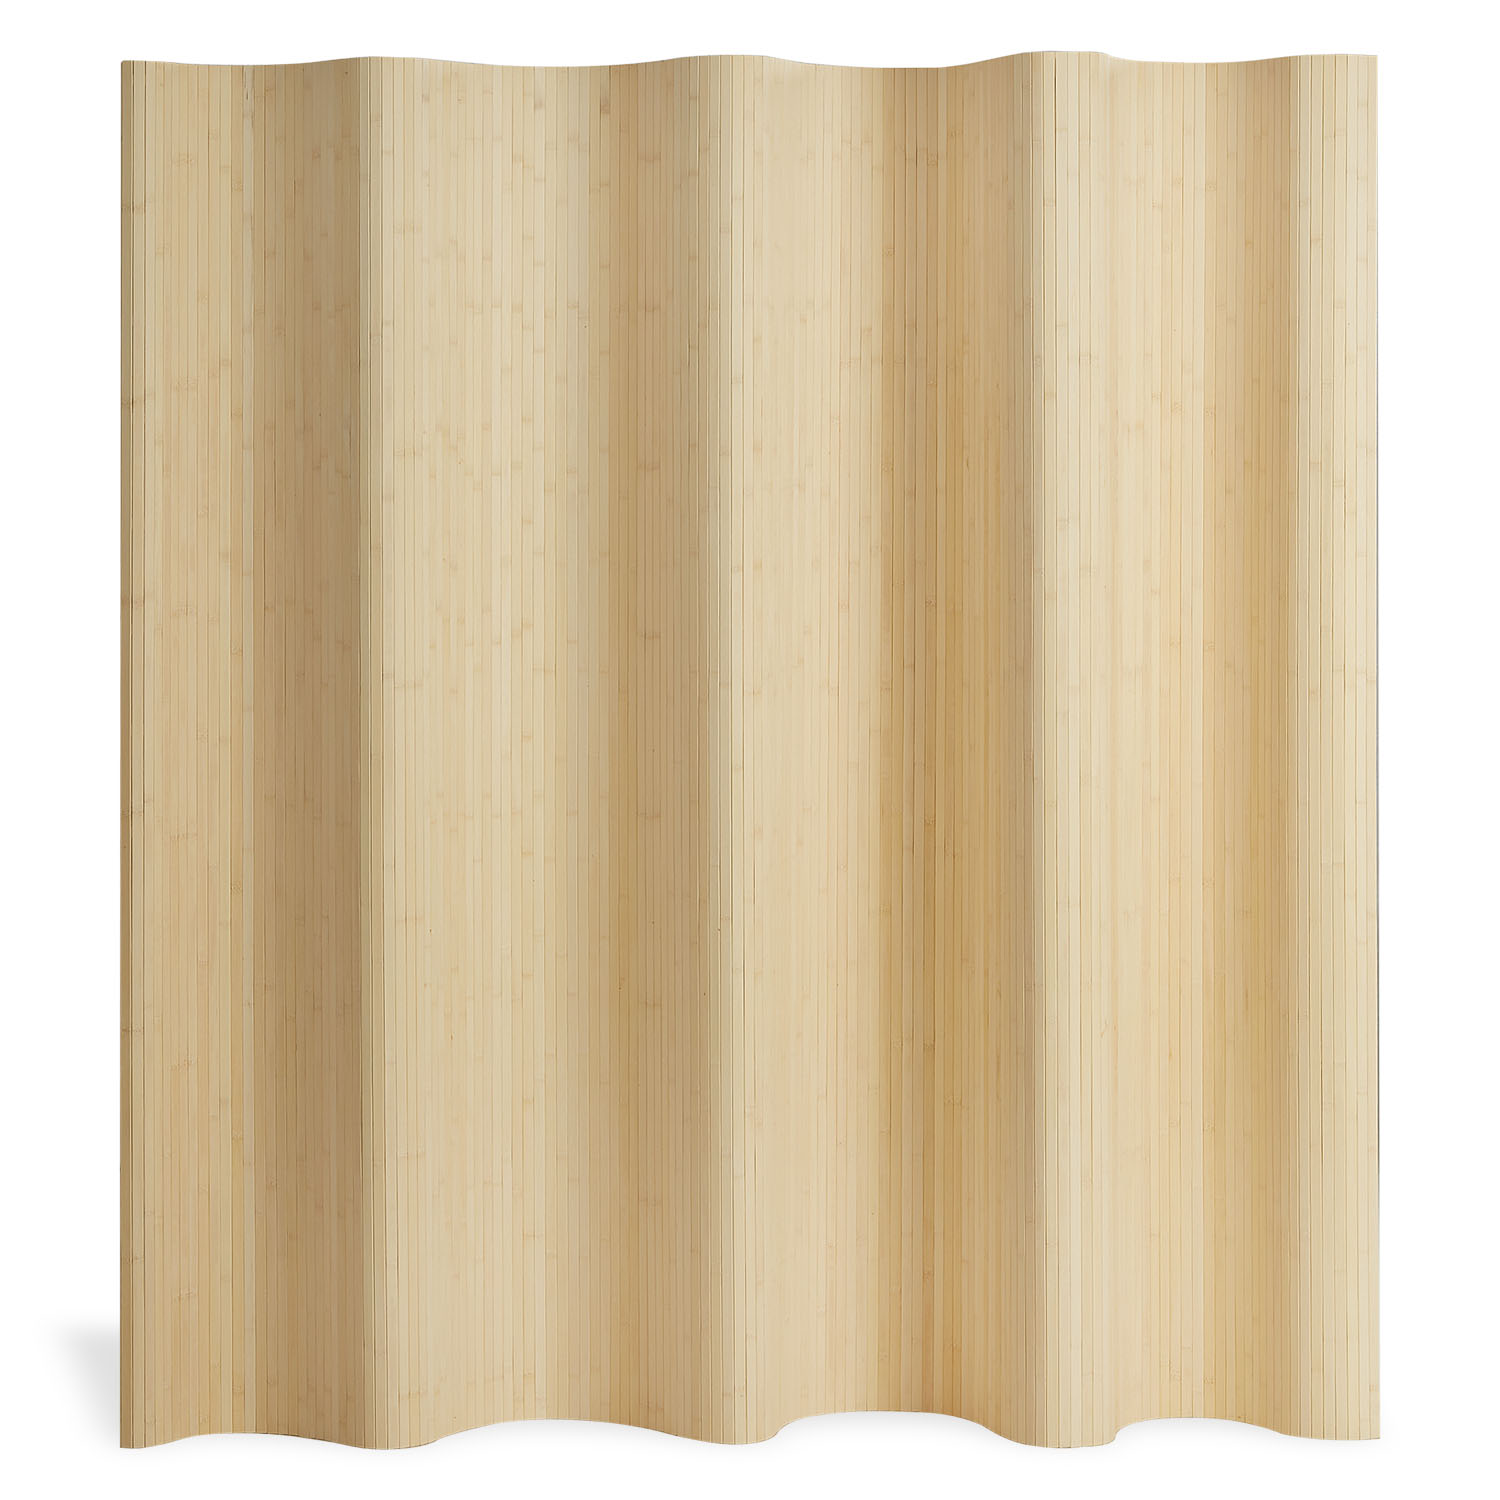 Paravent Raumteiler Trennwand Bambus  200 x 250 cm Sichtschutz Spanische Wand Natur